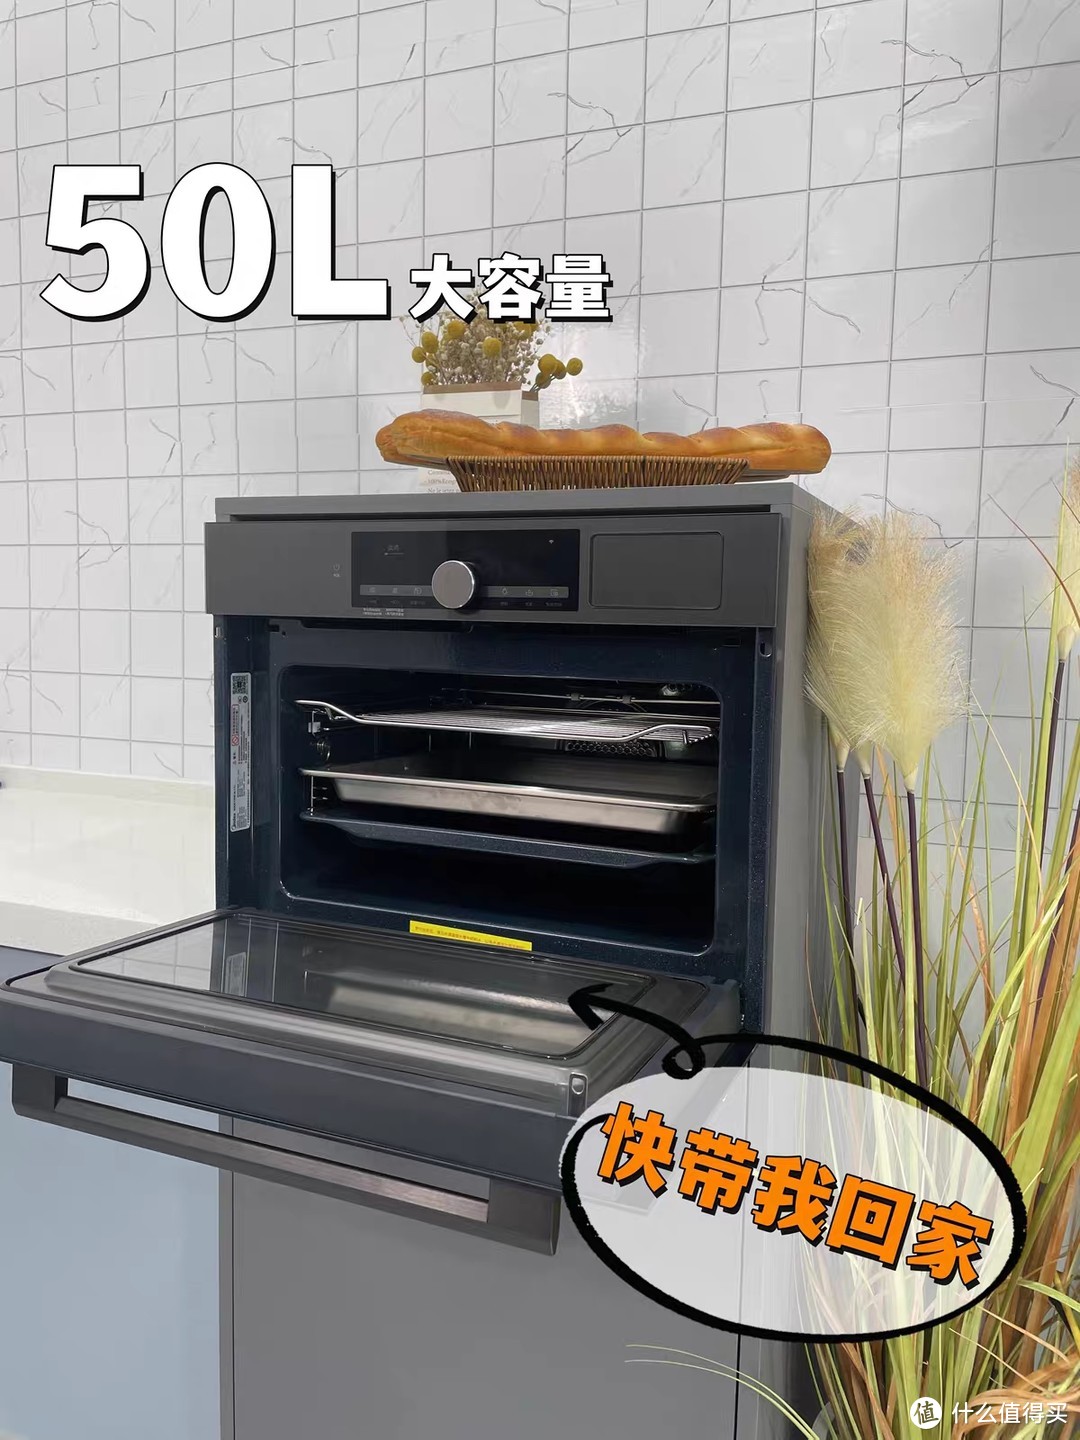 美的智能嵌入式微蒸烤炸一体机GP50——实现高效健康烹饪的利器